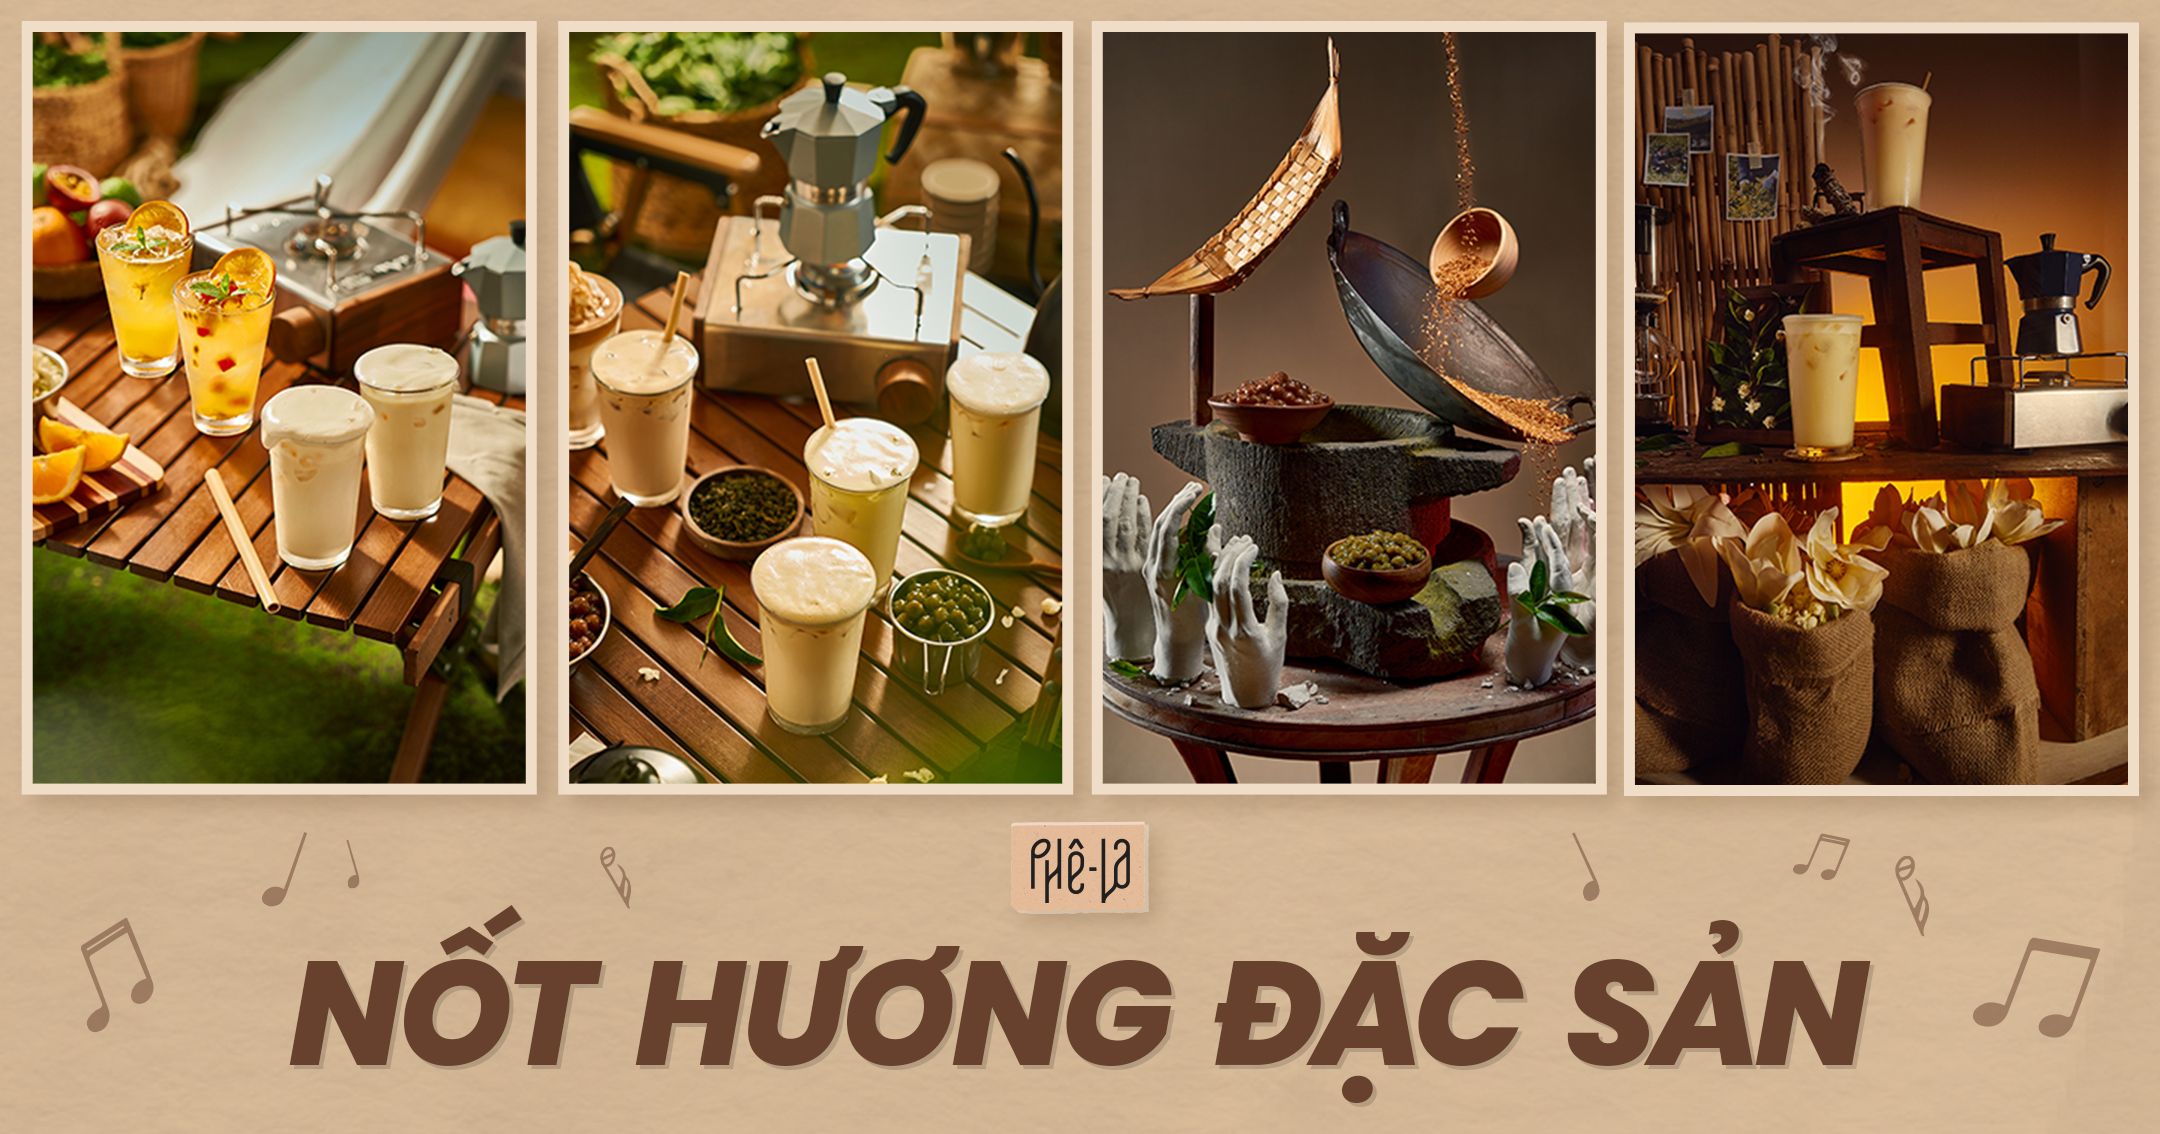 Phê La truyền cảm hứng và đánh thức vẻ đẹp nông sản Việt qua bộ ảnh nghệ thuật “Nốt hương đặc sản”